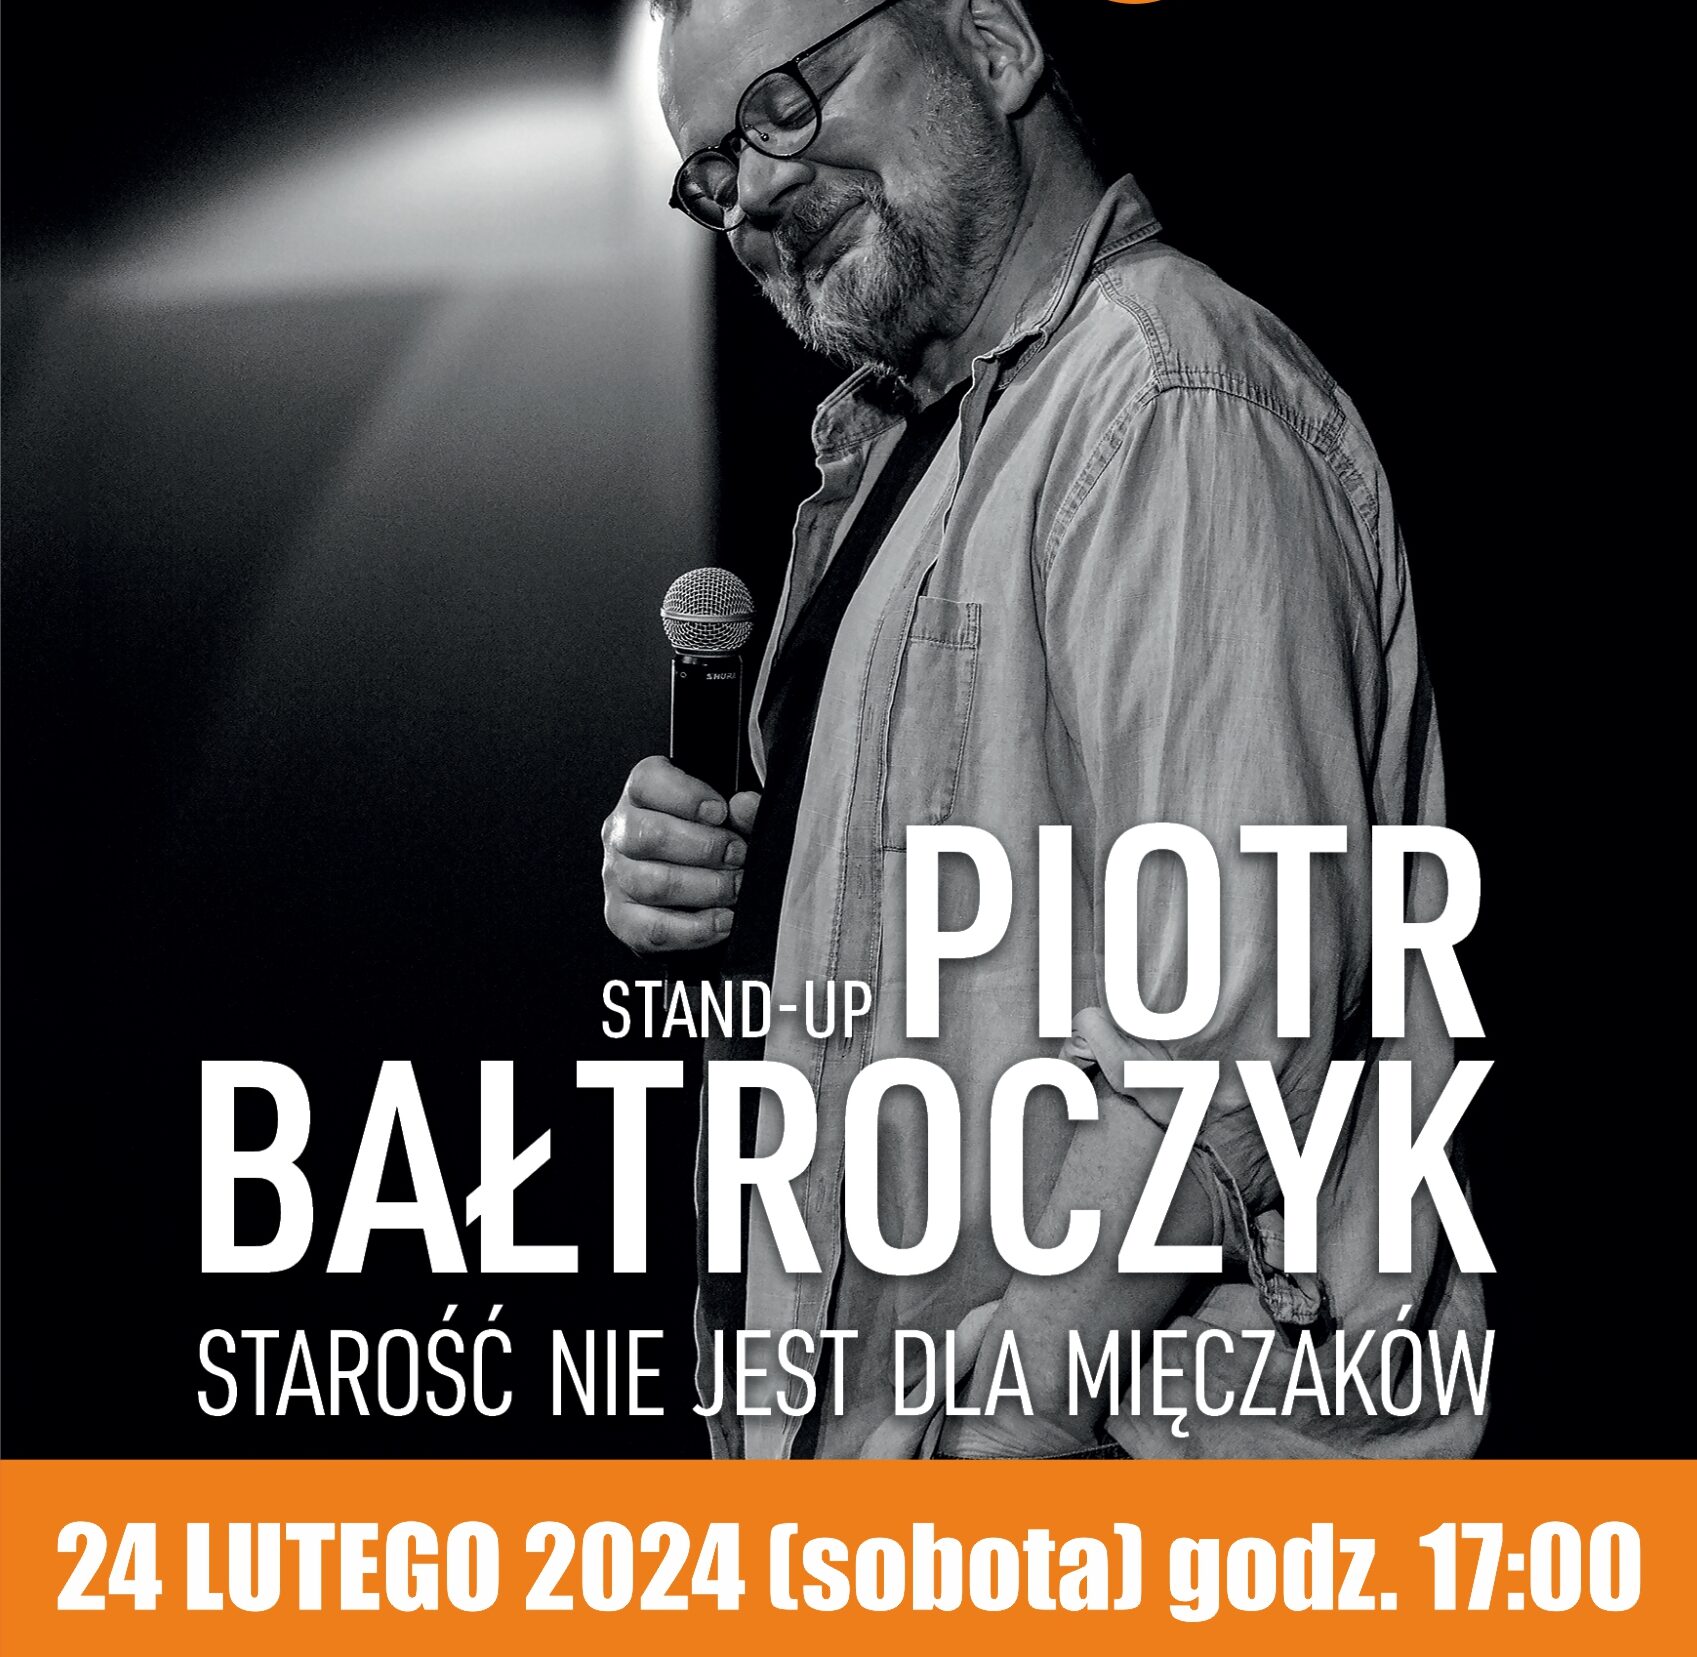 Plakat informacyjny o stand-upie Piotra Bałtroczyka "Starość nie jest dla mięczaków" 24 lutego 2024 o godzinie 17:00. Na tle mężczyzna w podeszłym wieku, z zarostem i w okularach trzyma mikrofon i uśmiecha się.